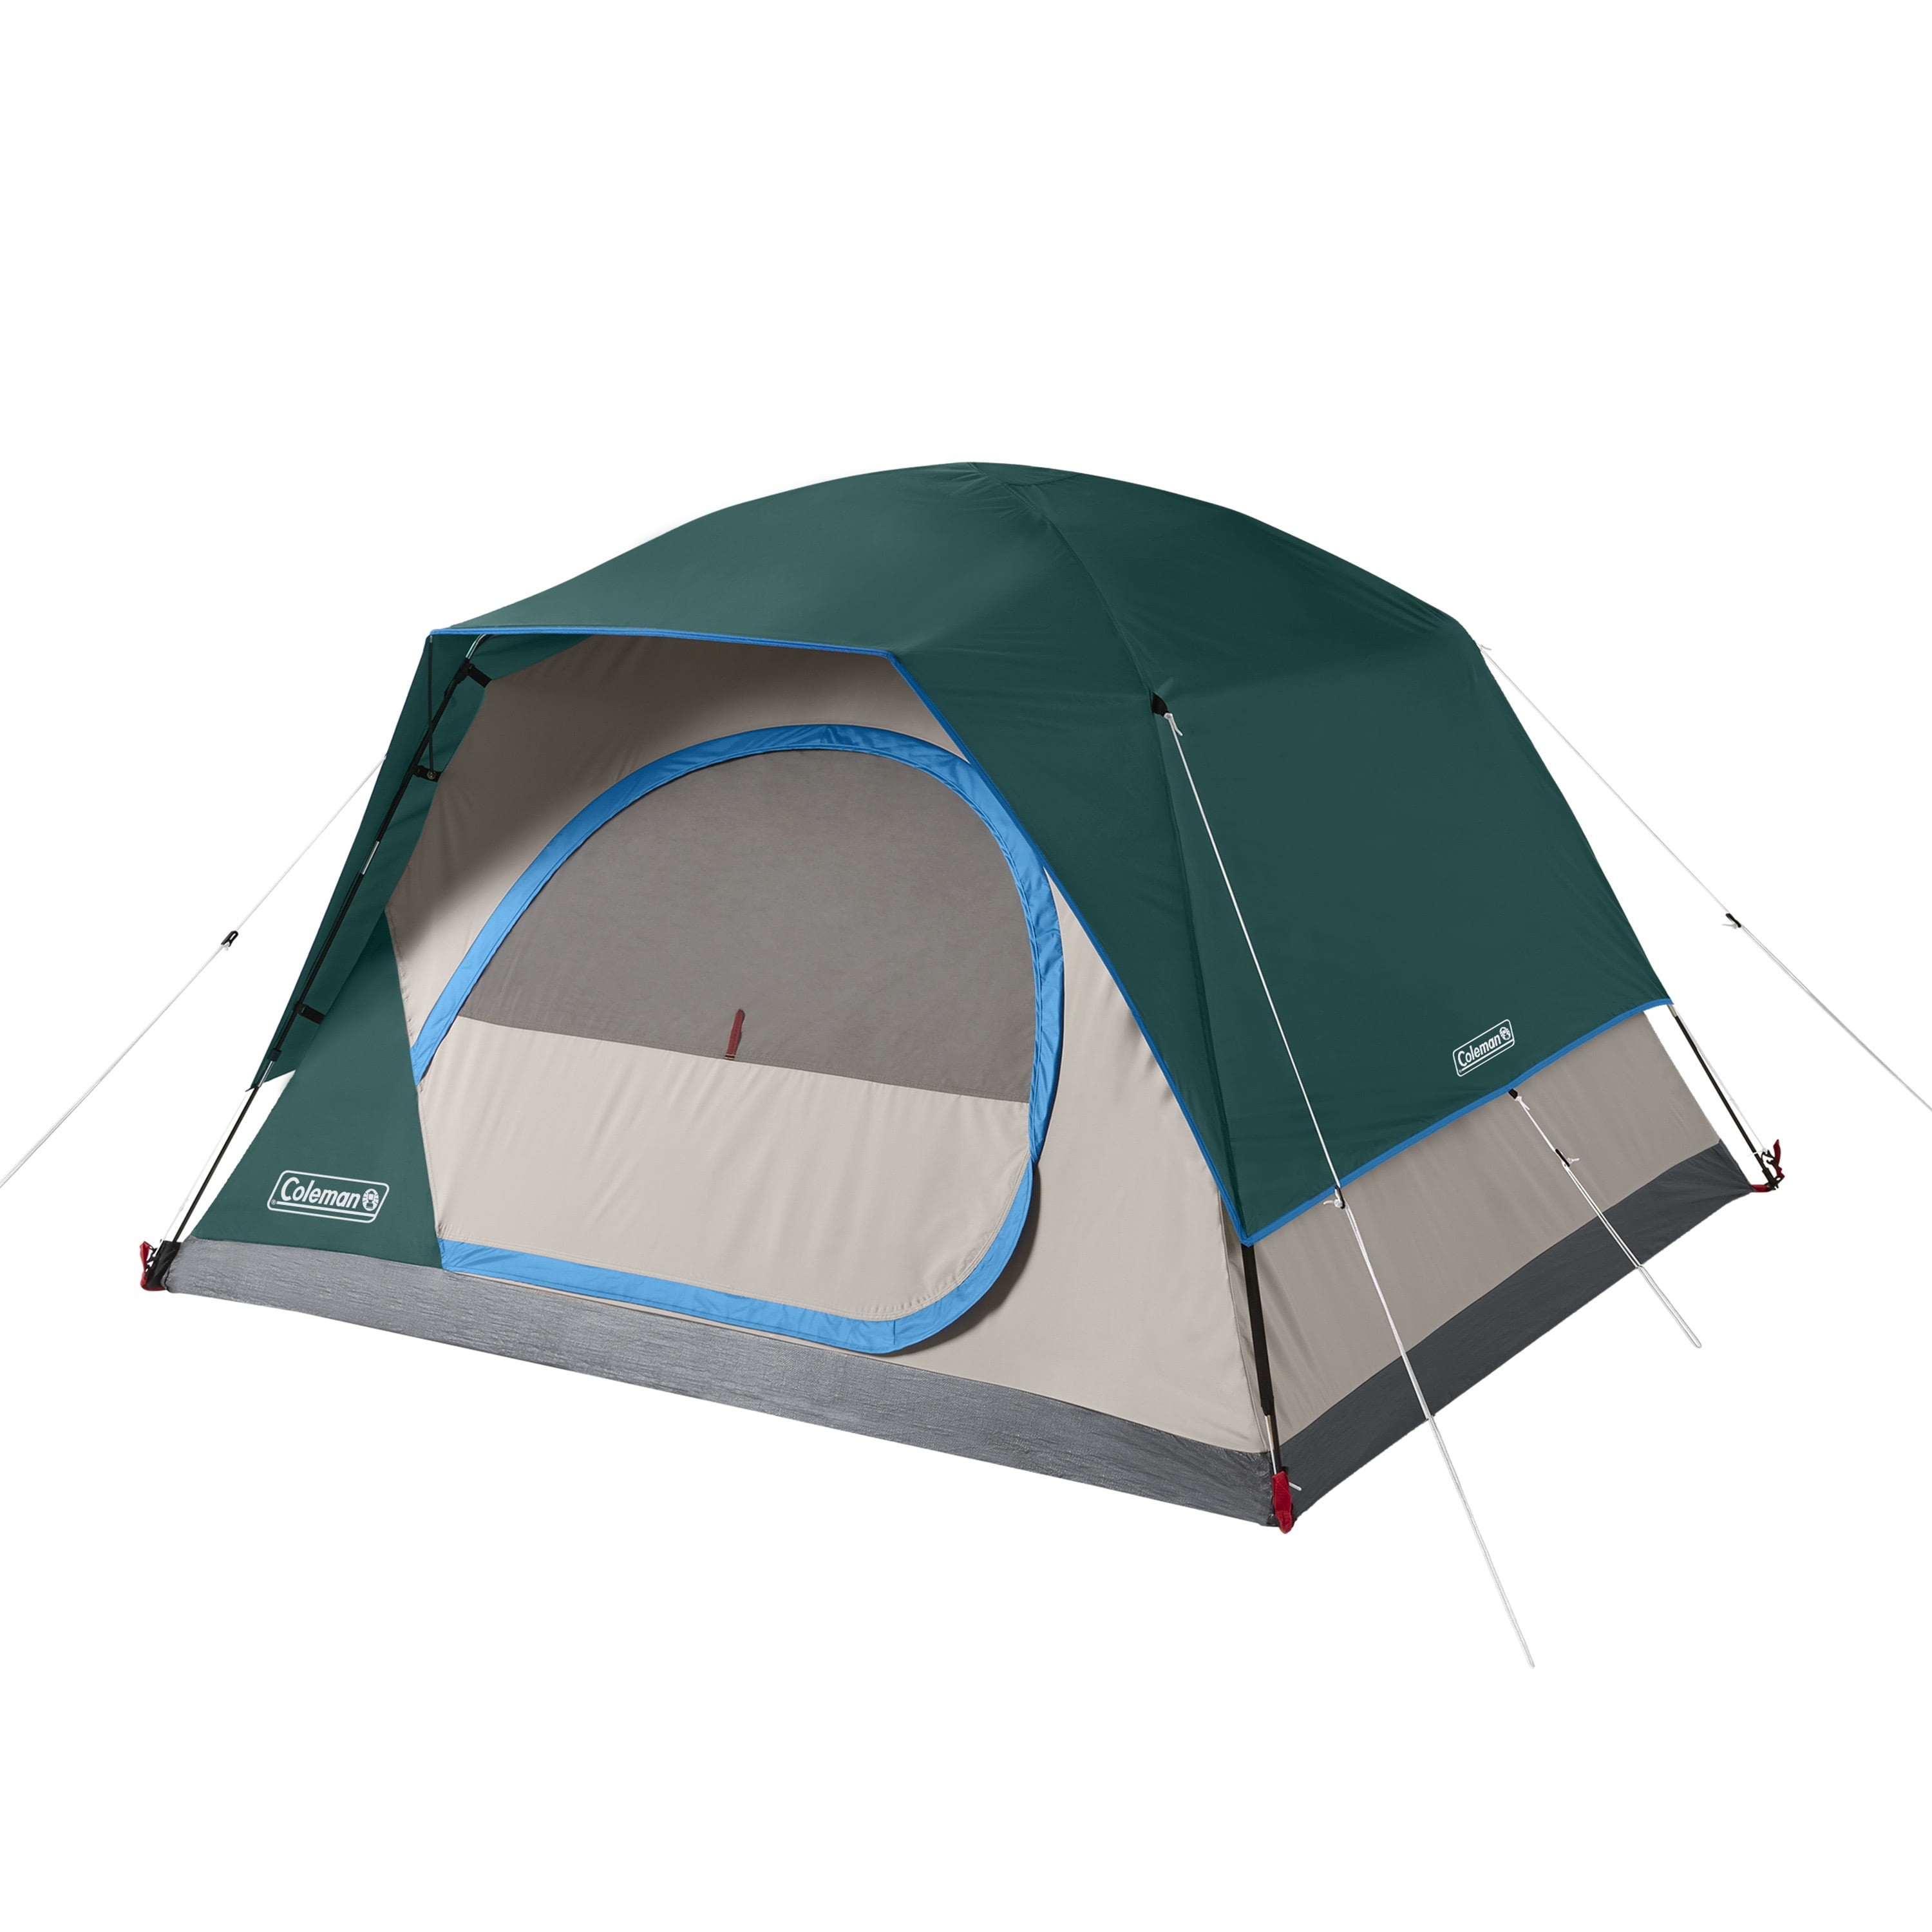 4-Person Camping Tent, Evergreen Walmart.com